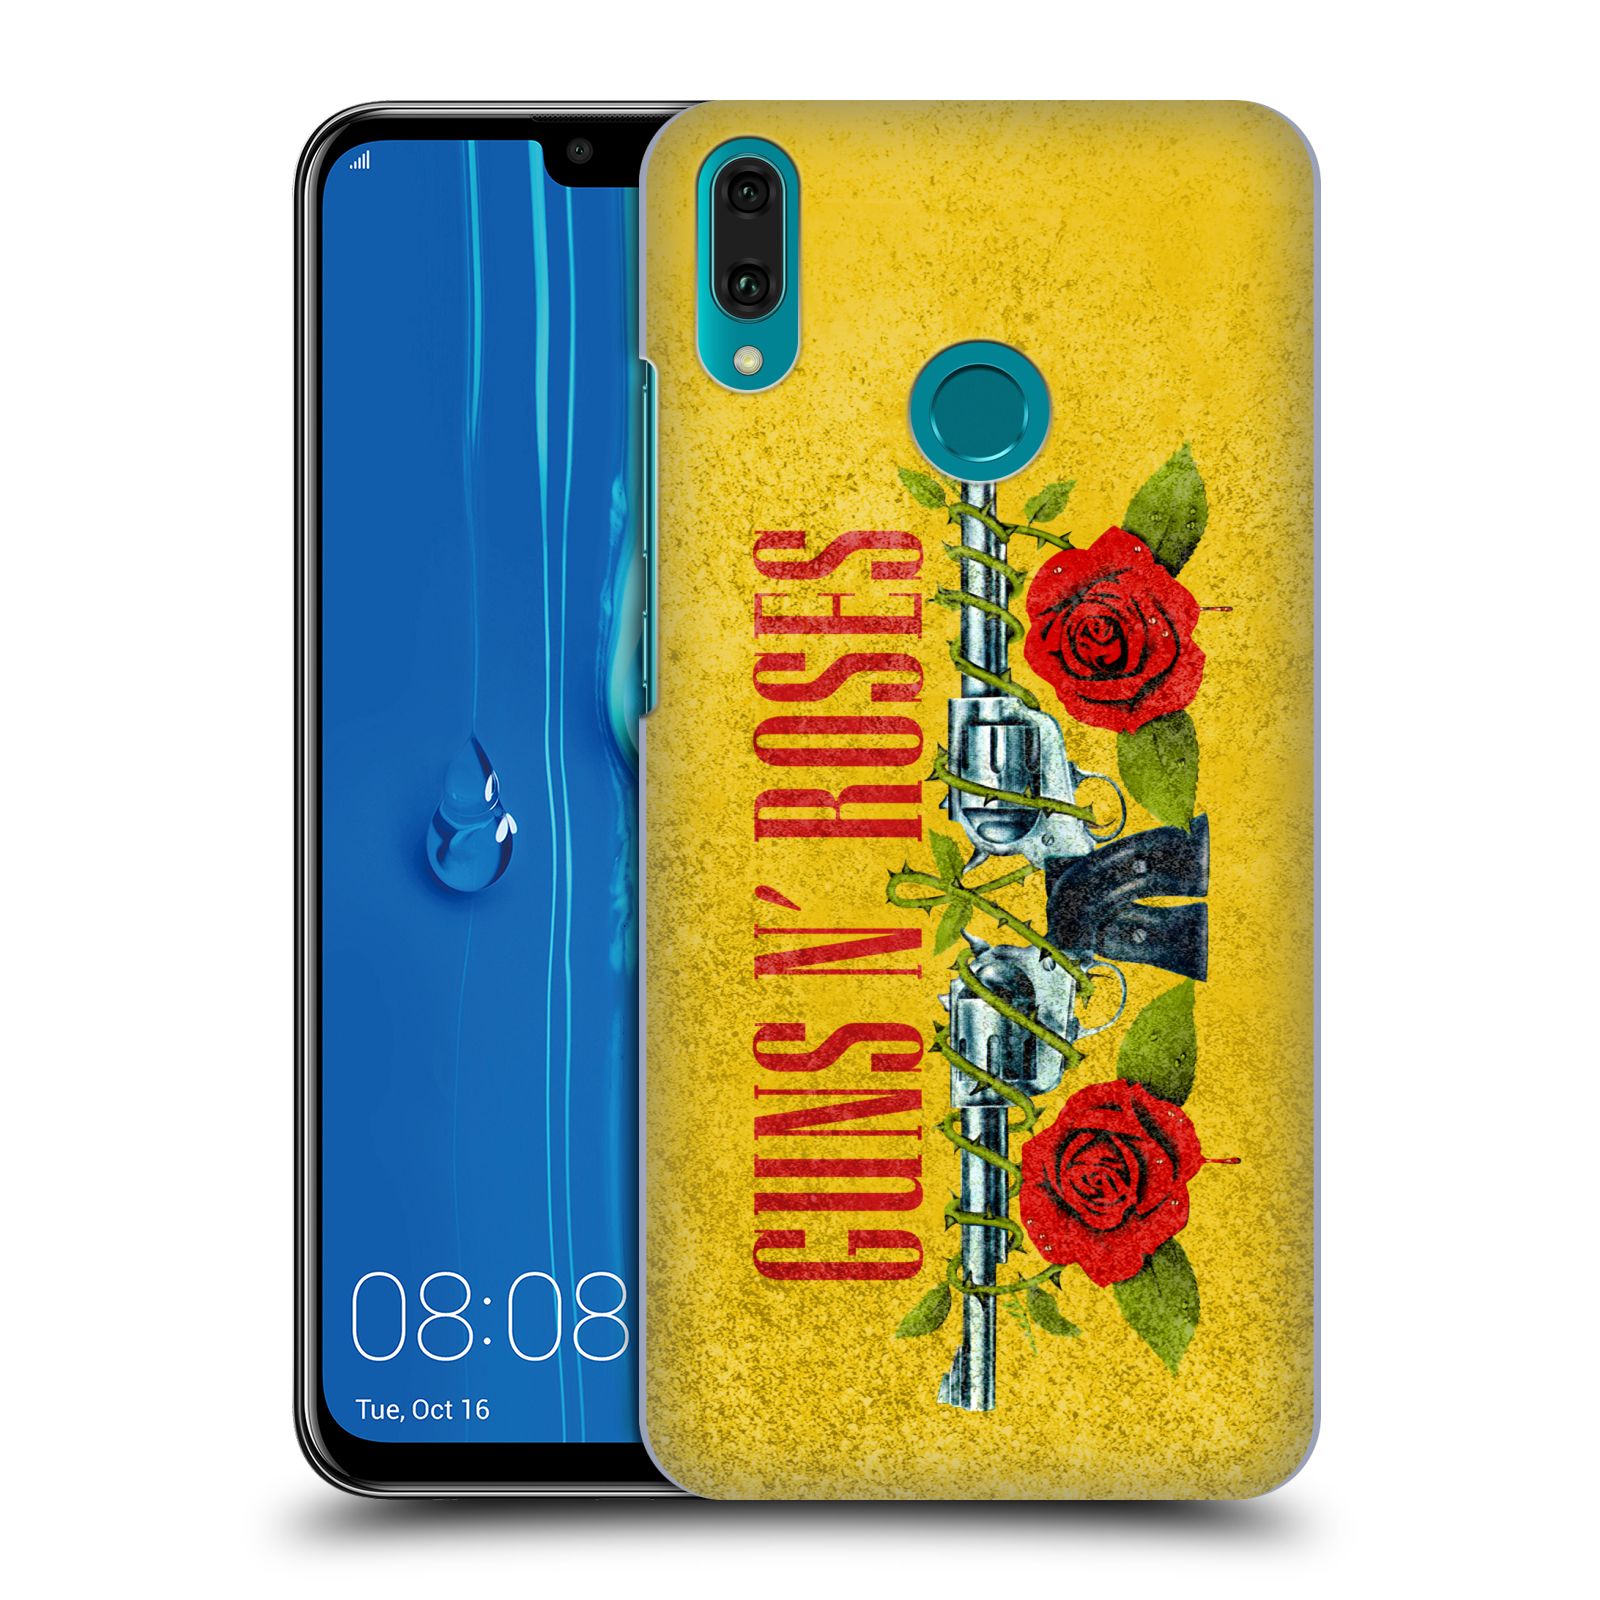 Pouzdro na mobil Huawei Y9 2019 - HEAD CASE - hudební skupina Guns N Roses pistole a růže žluté pozadí